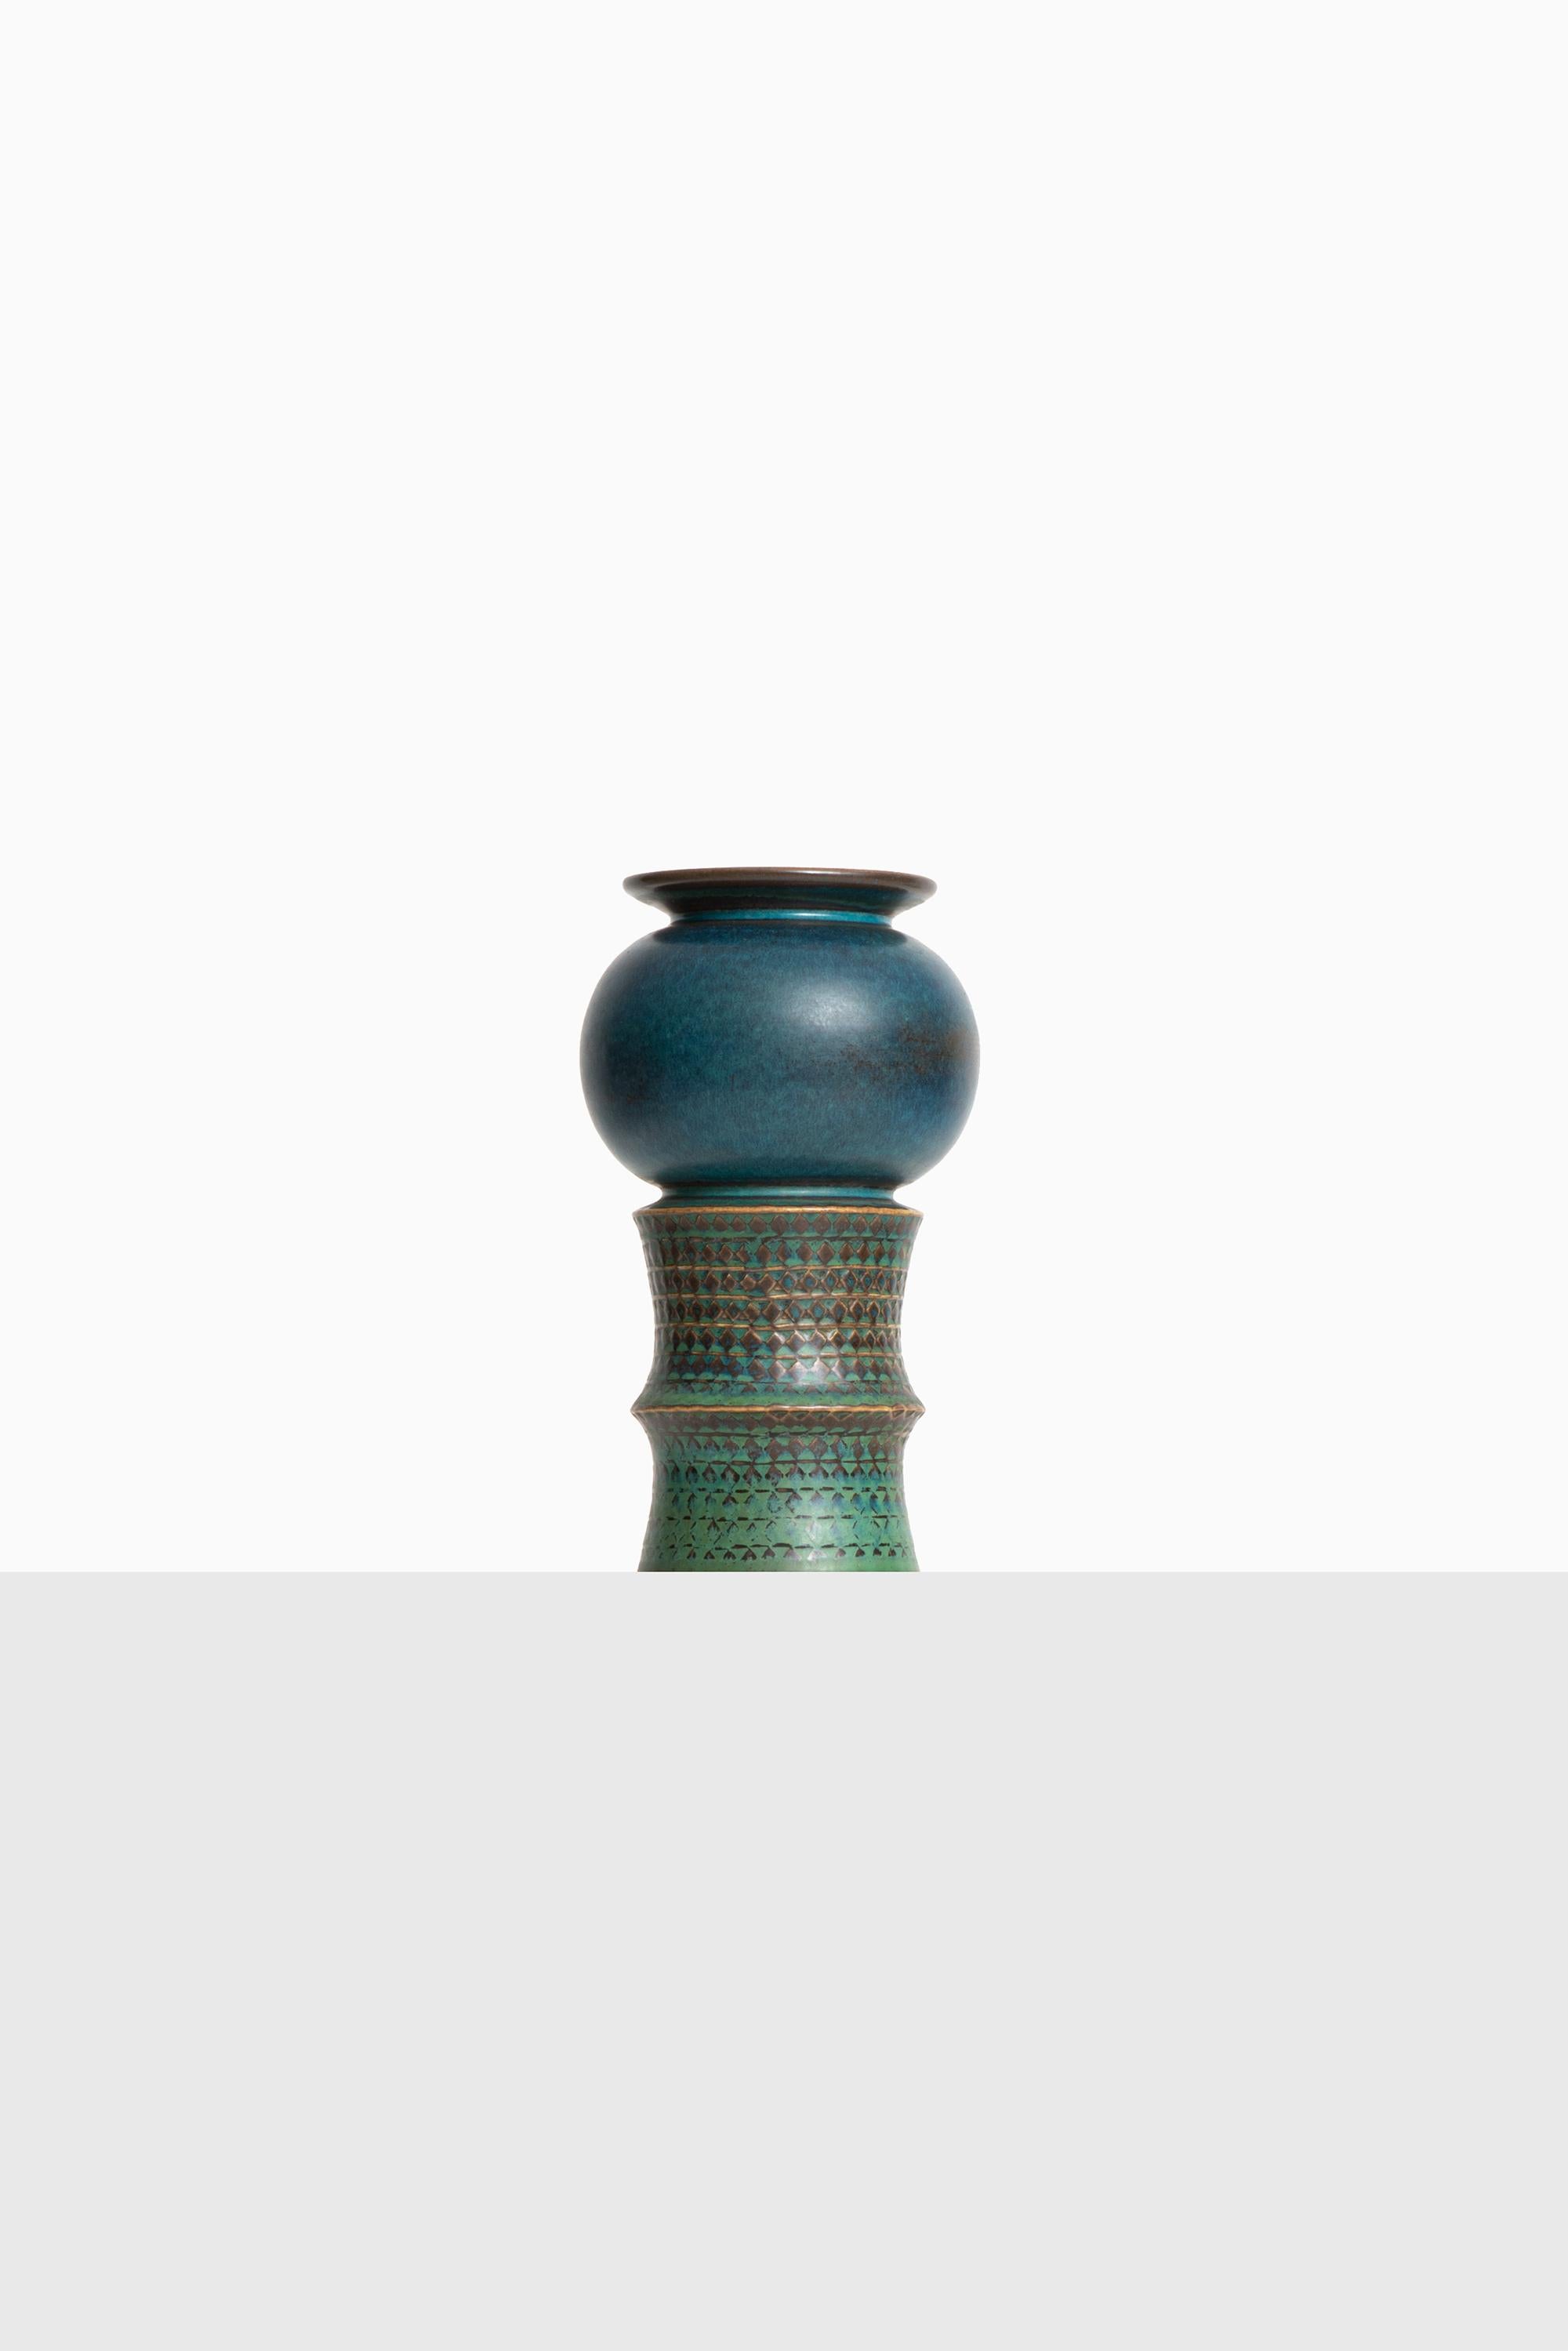 Ceramic vase designed by Stig Lindberg. Produced by Gustavsberg in Sweden.